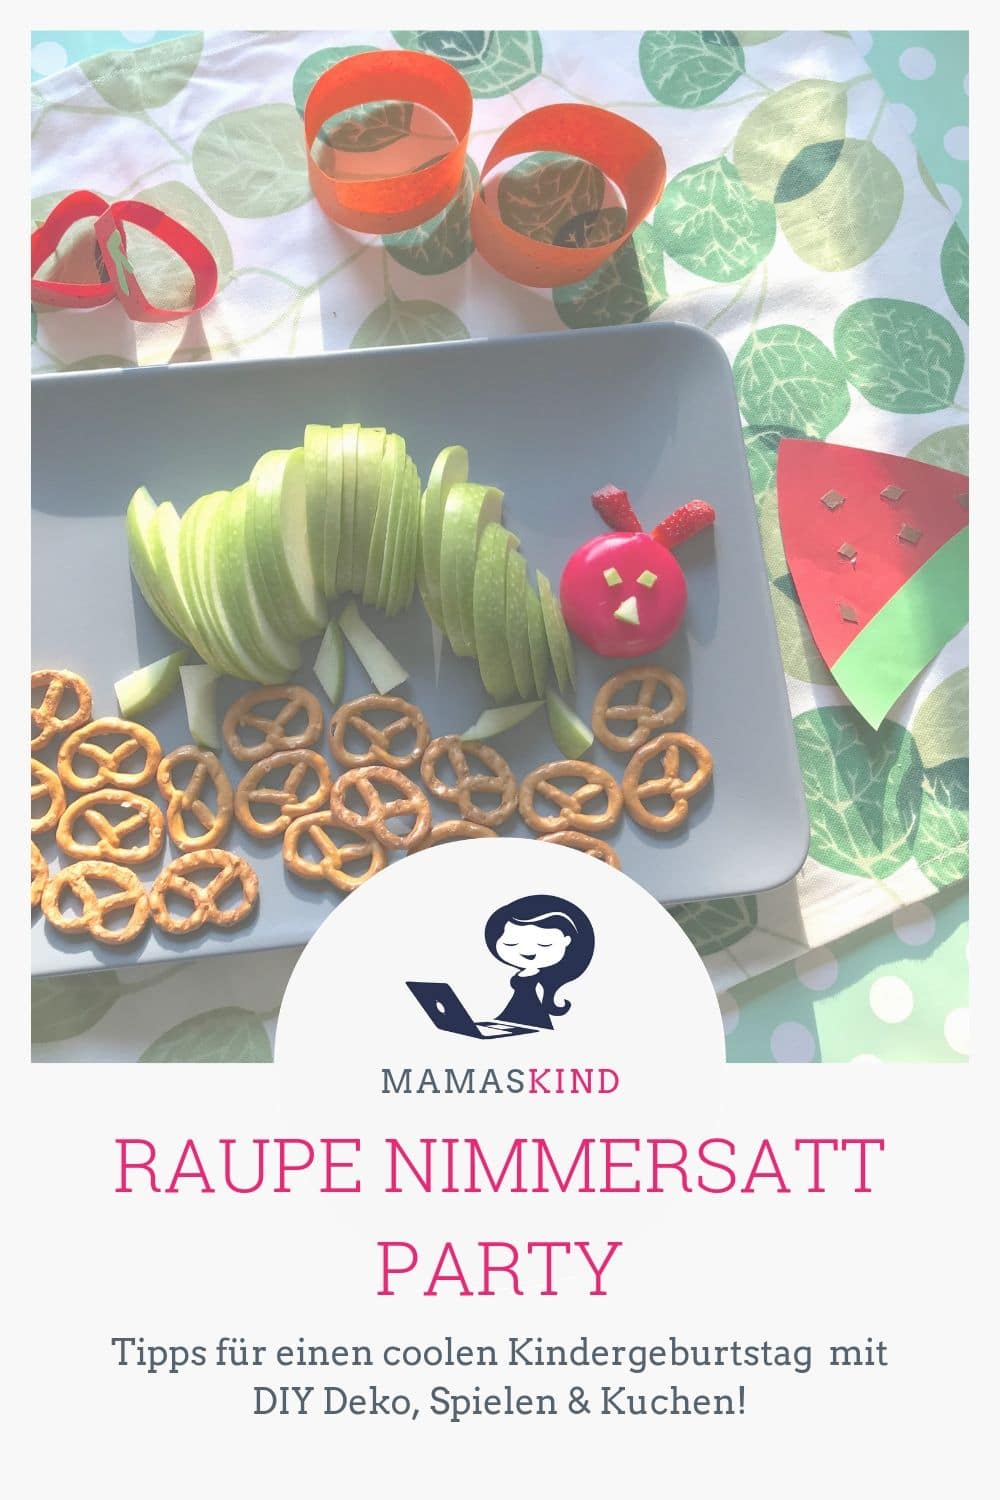 Raupe Nimmersatt Party: Tipps für einen coolen Kindergeburtstag mit DIY Deko, Spielen und Kuchen! | Mehr Infos zum Mottogeburtstag auf Mamaskind.de